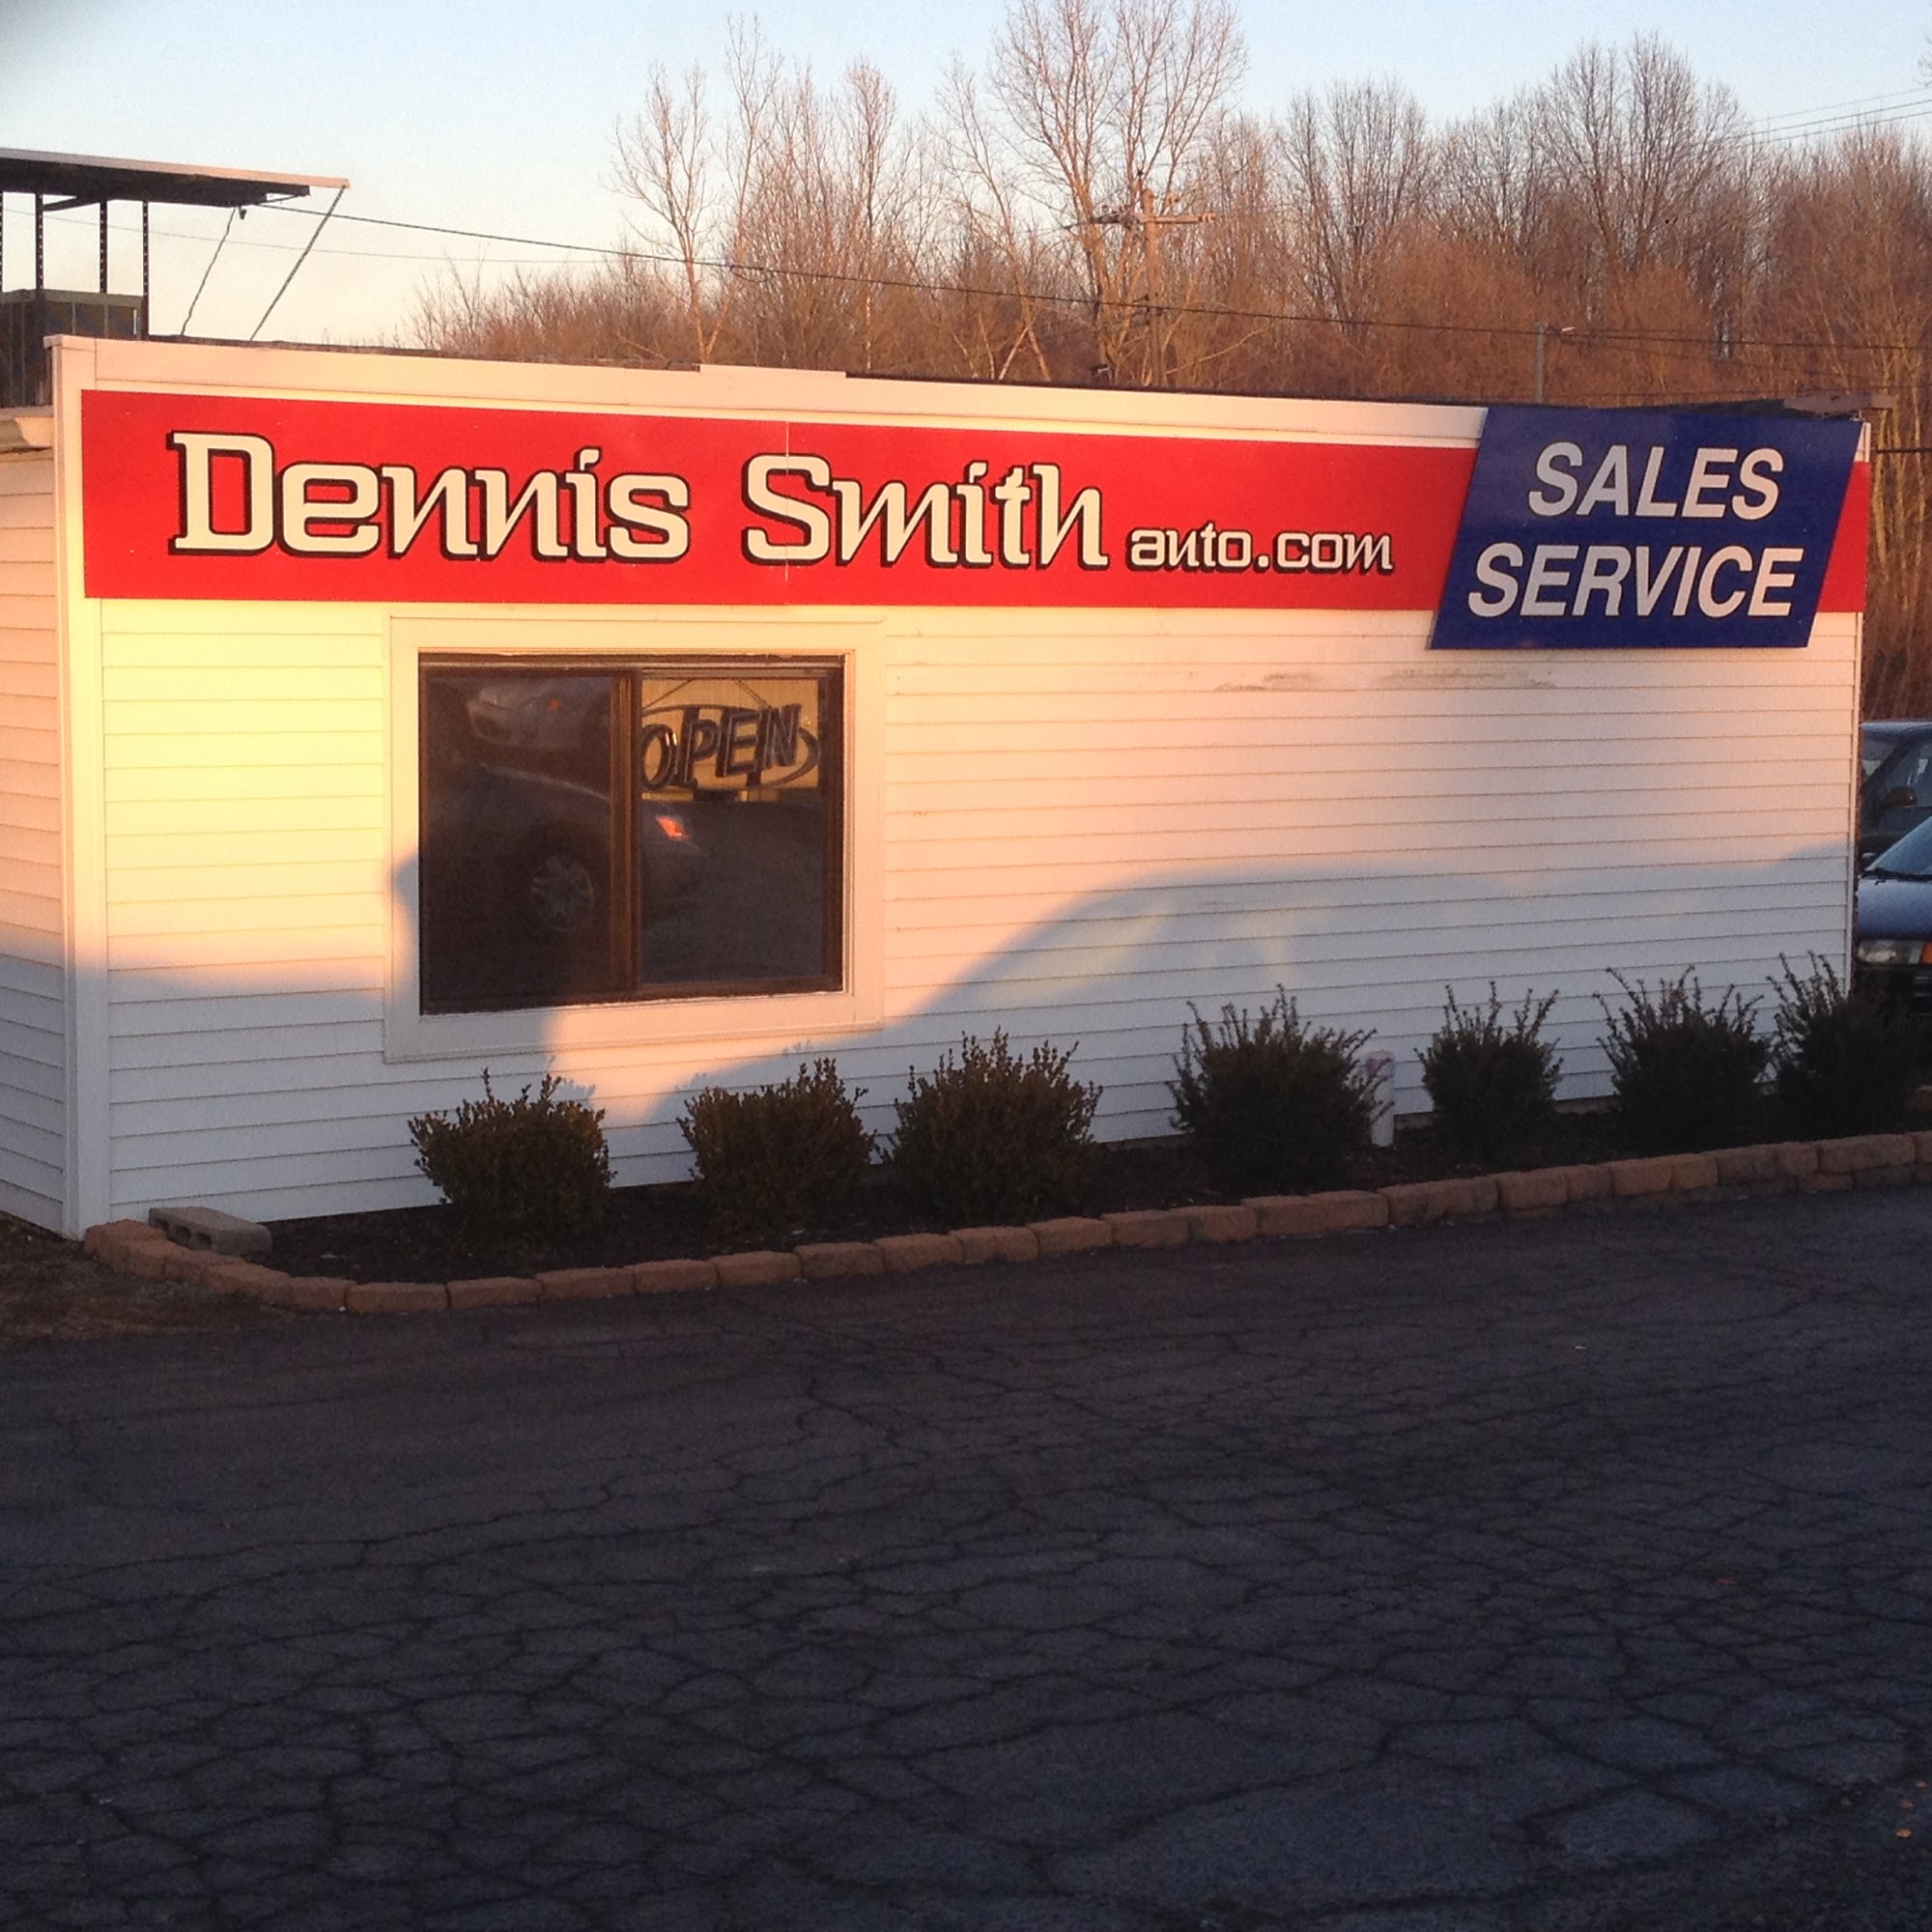 Dennis Smith Auto Sales